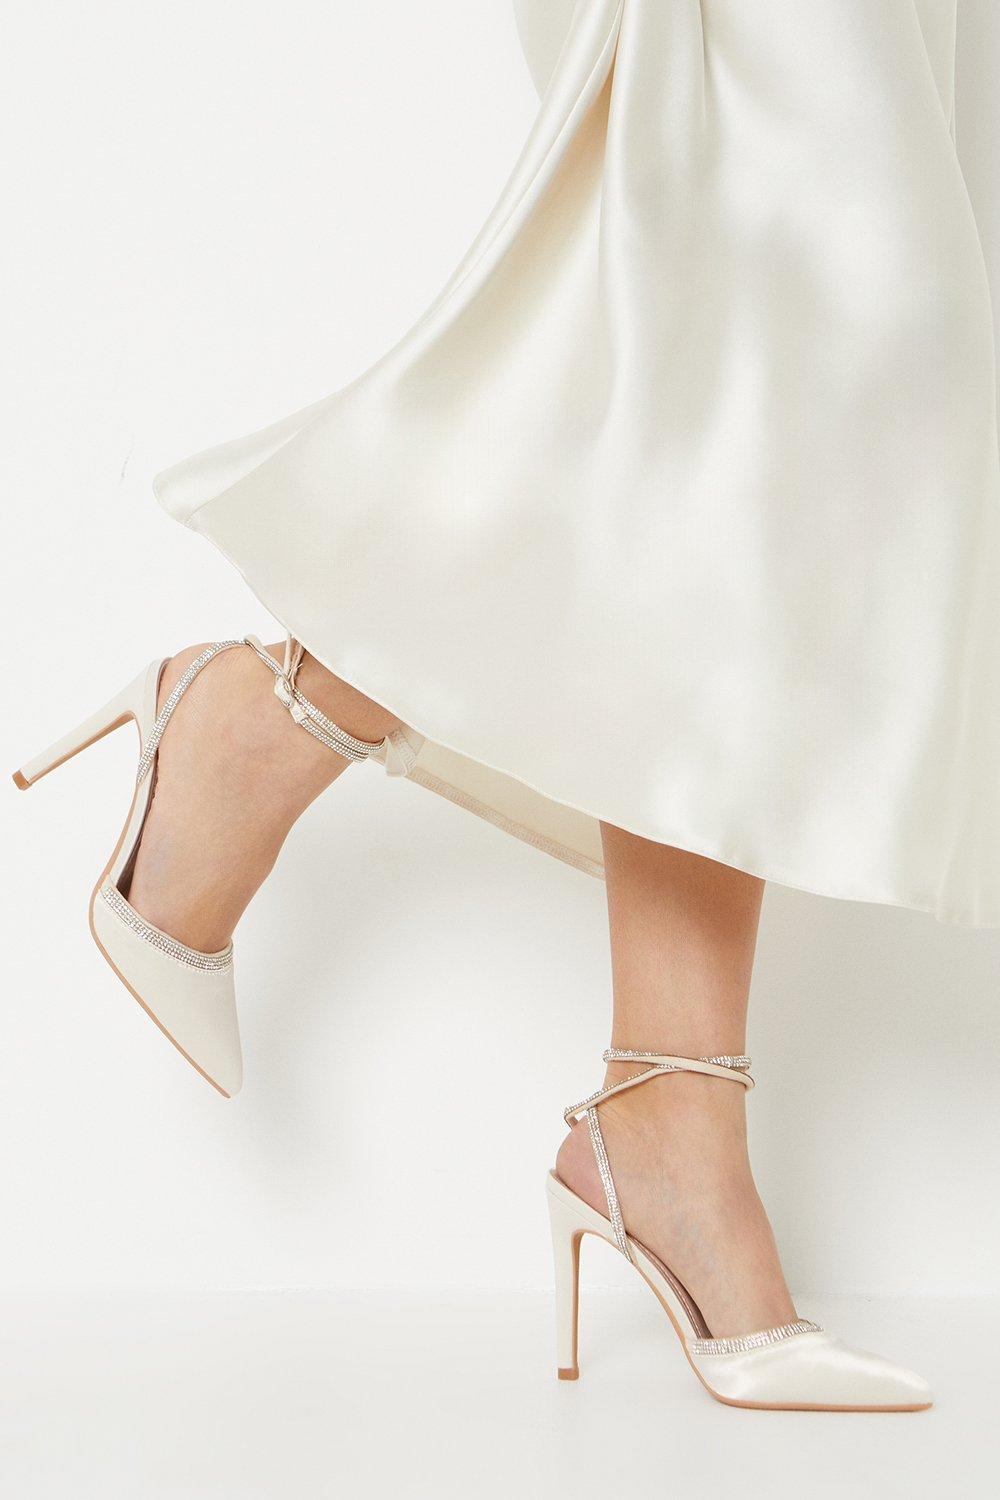 Taya Bridal Satin Diamante High Stiletto Court Shoes - Ivory